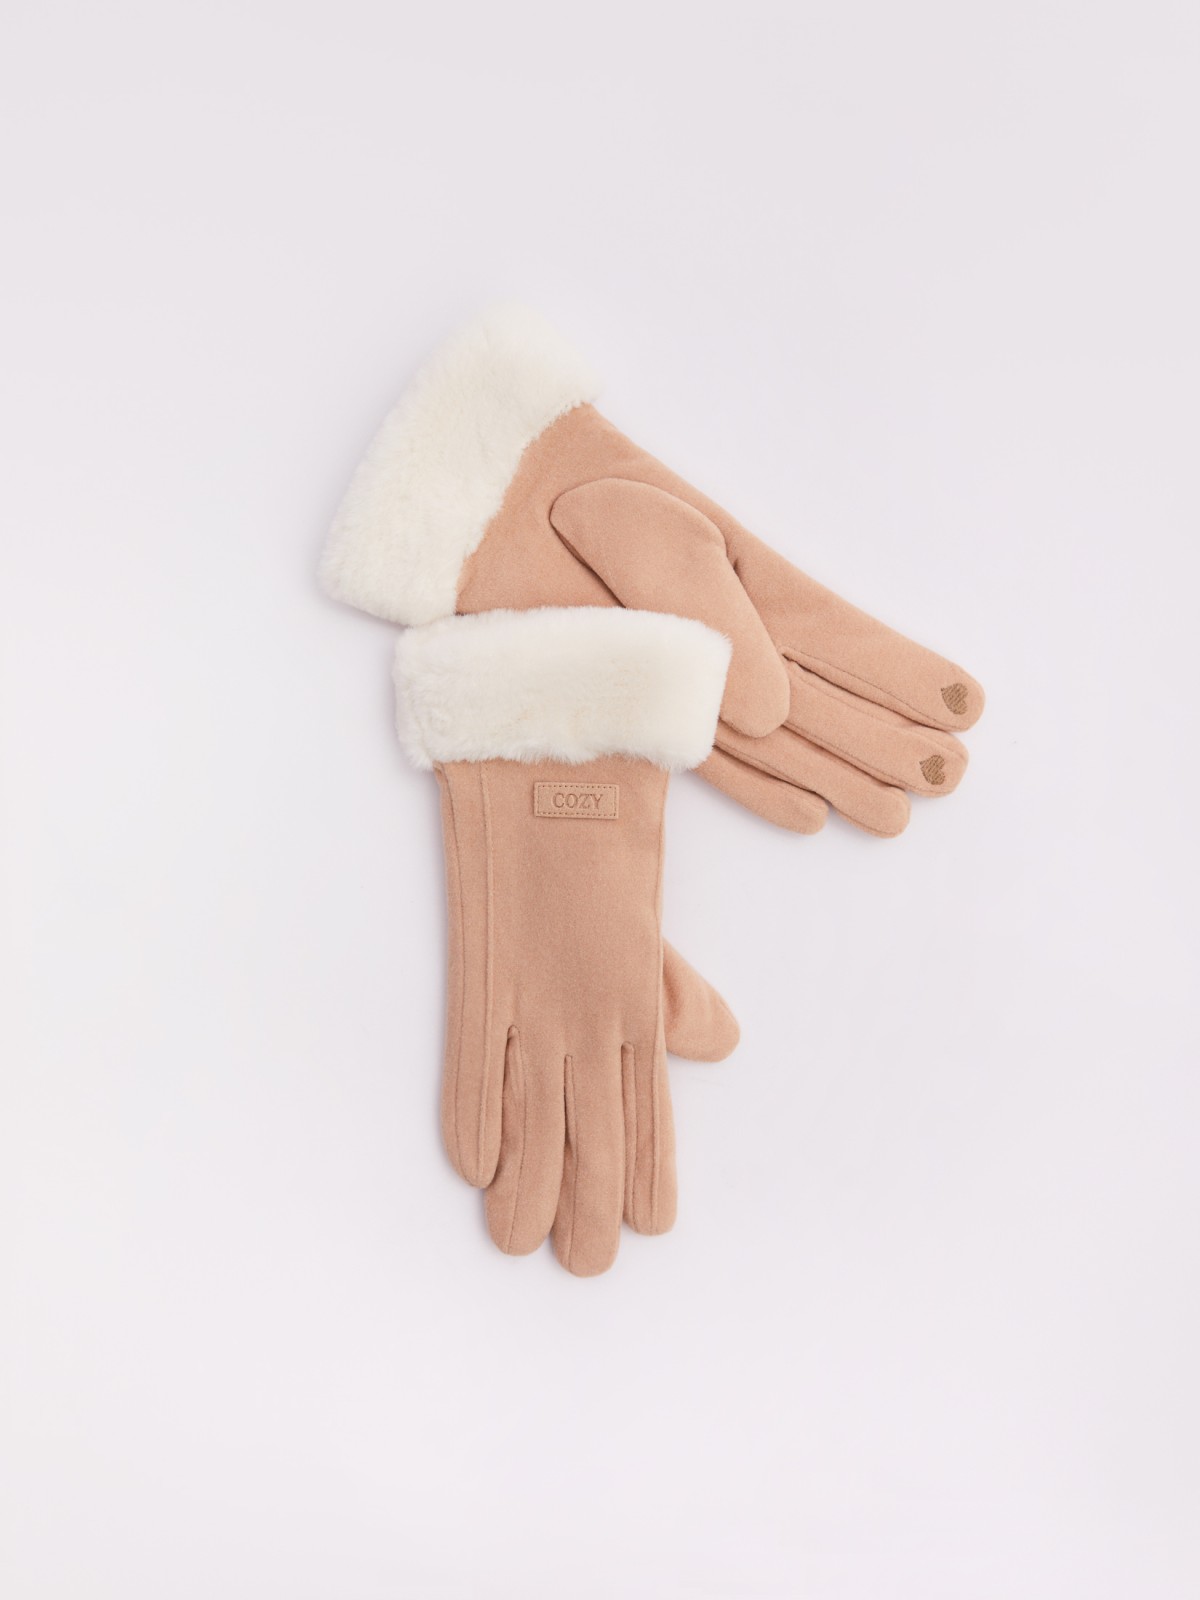 Тёплые перчатки с опушкой из экомеха и начёсом zolla 023429659025, цвет молоко, размер S